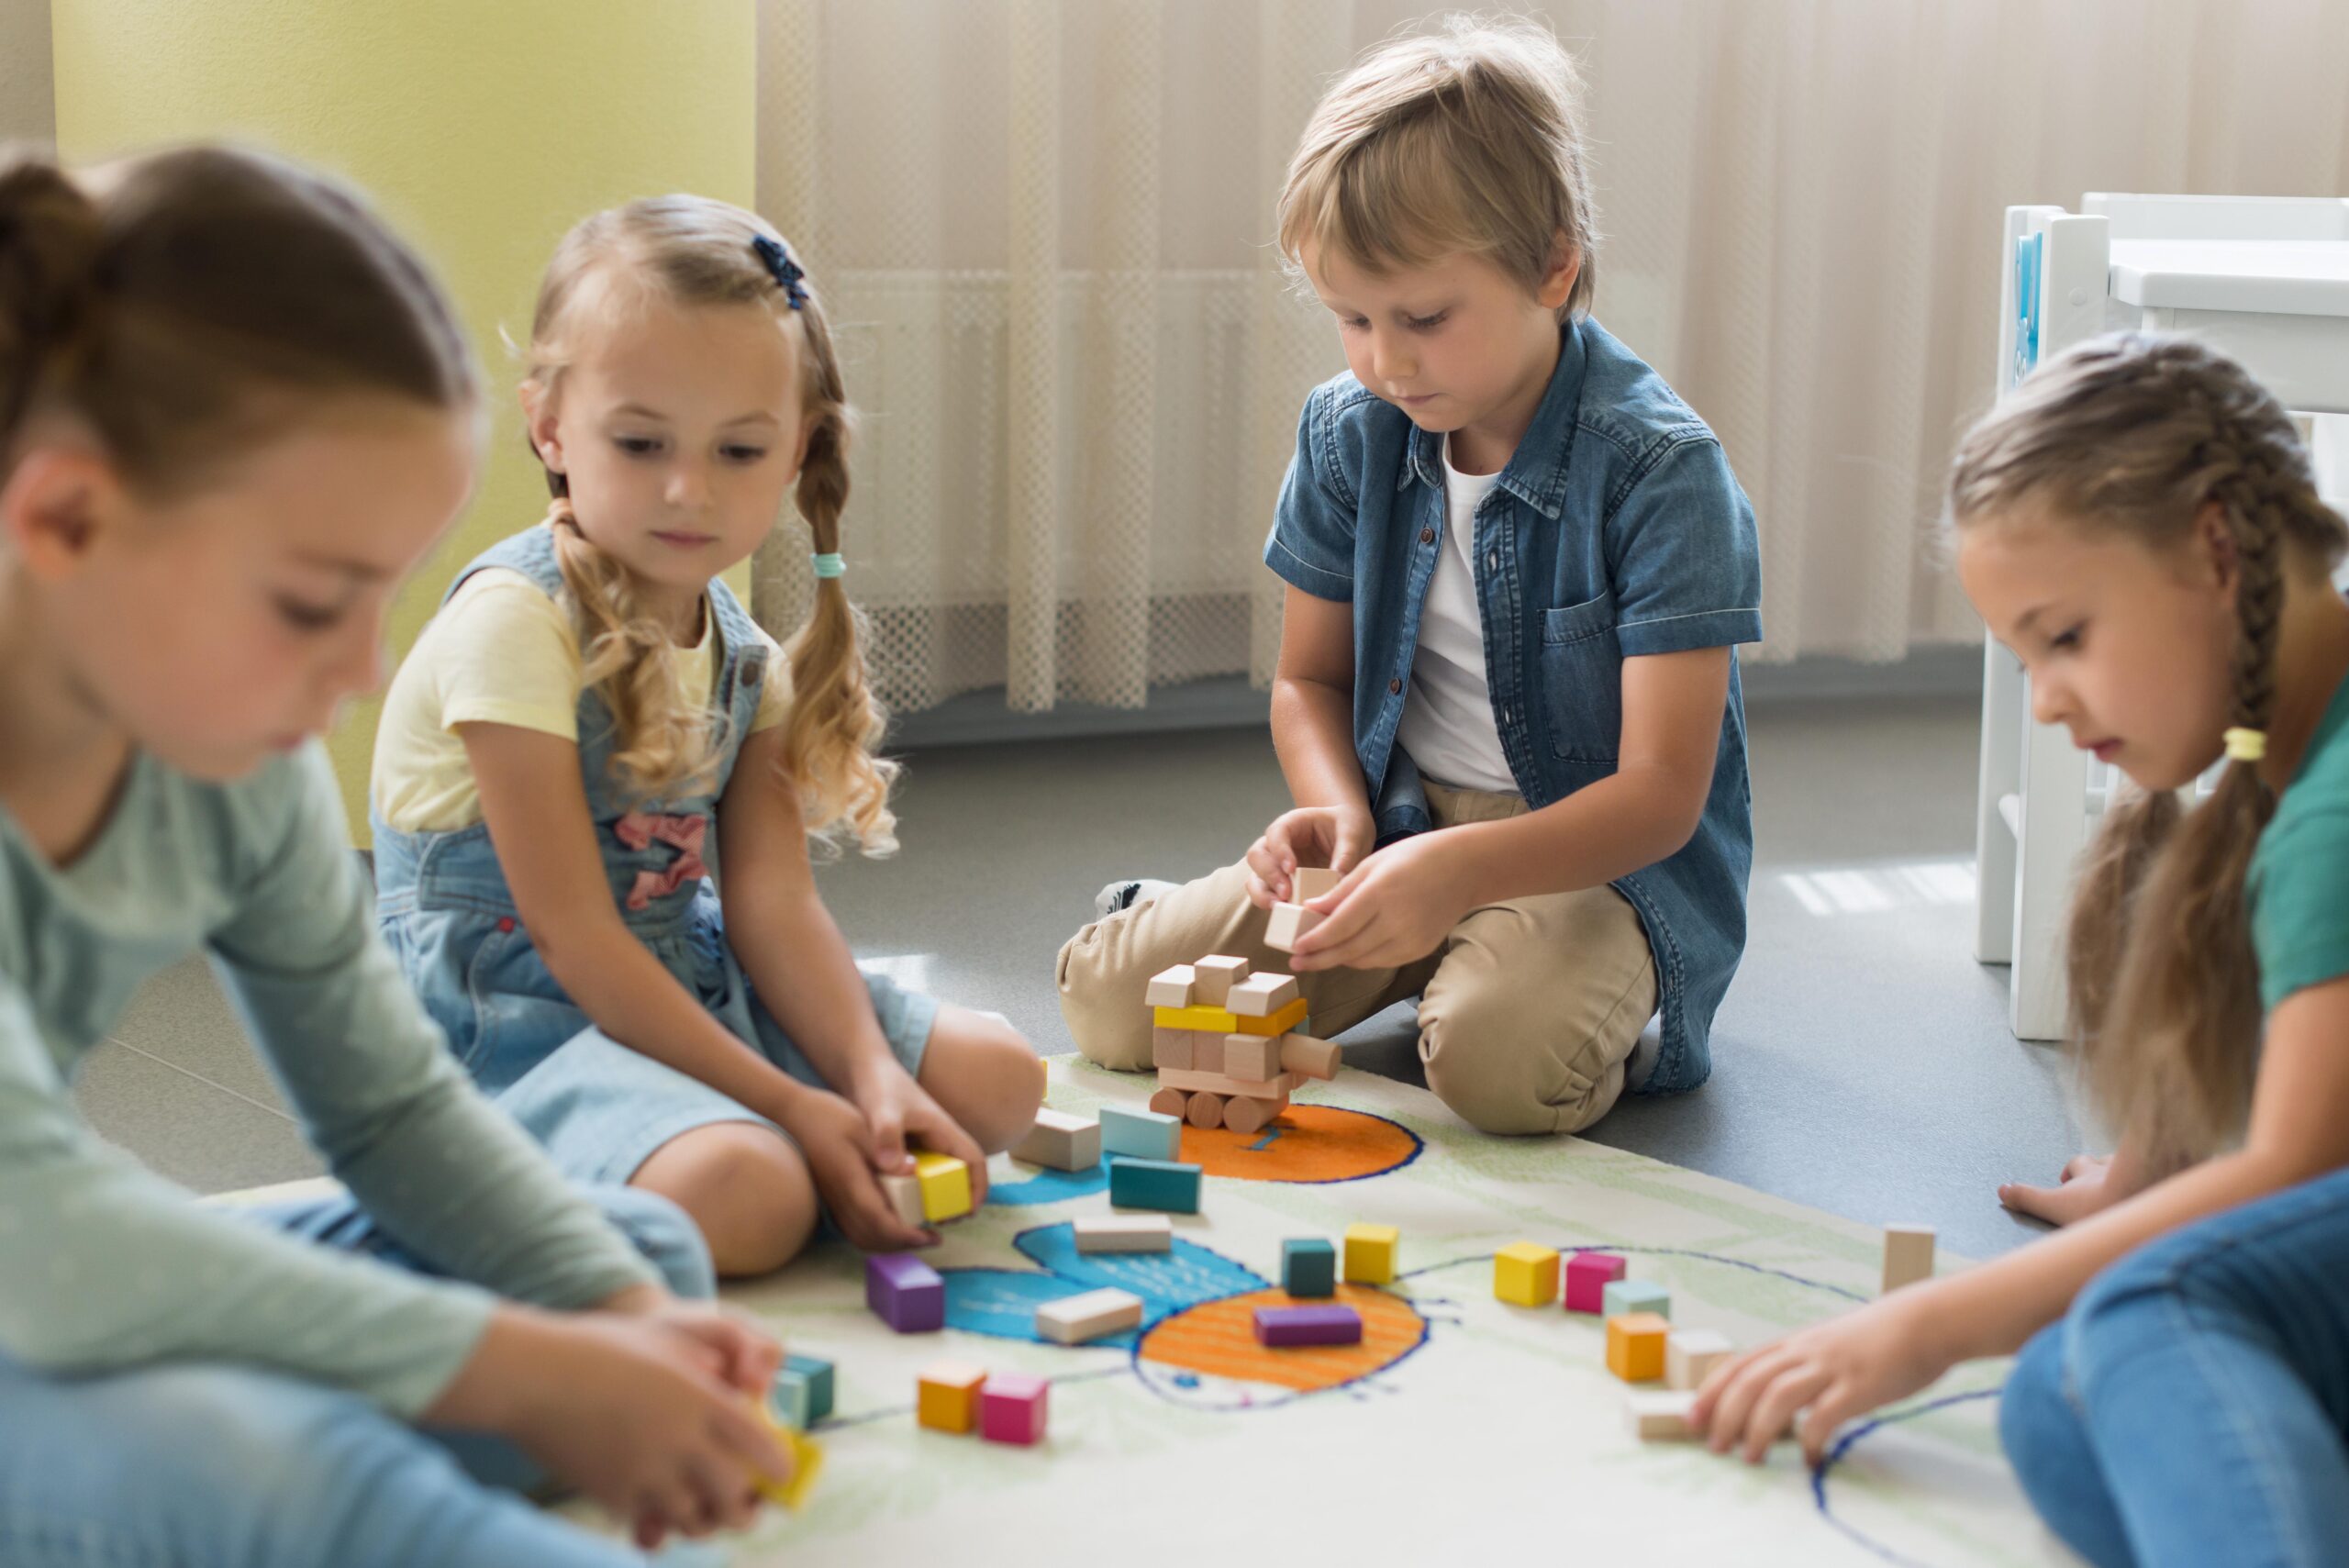 Un groupe d'enfants jouant avec des puzzles éducatifs au sol à différents âges.